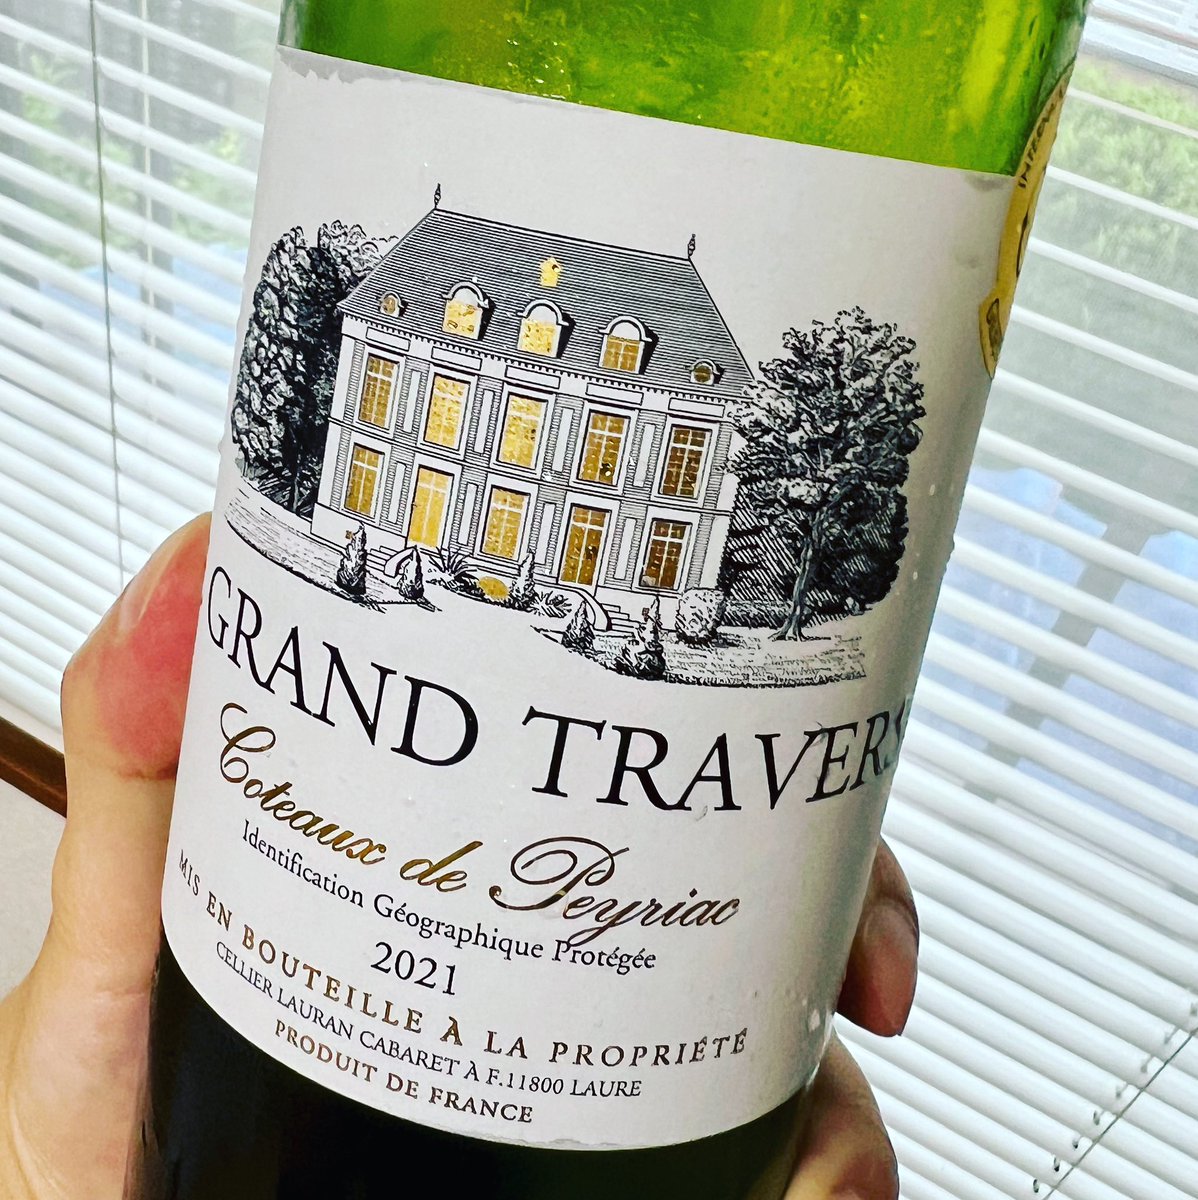 #wine #grandtraverse #ワイン